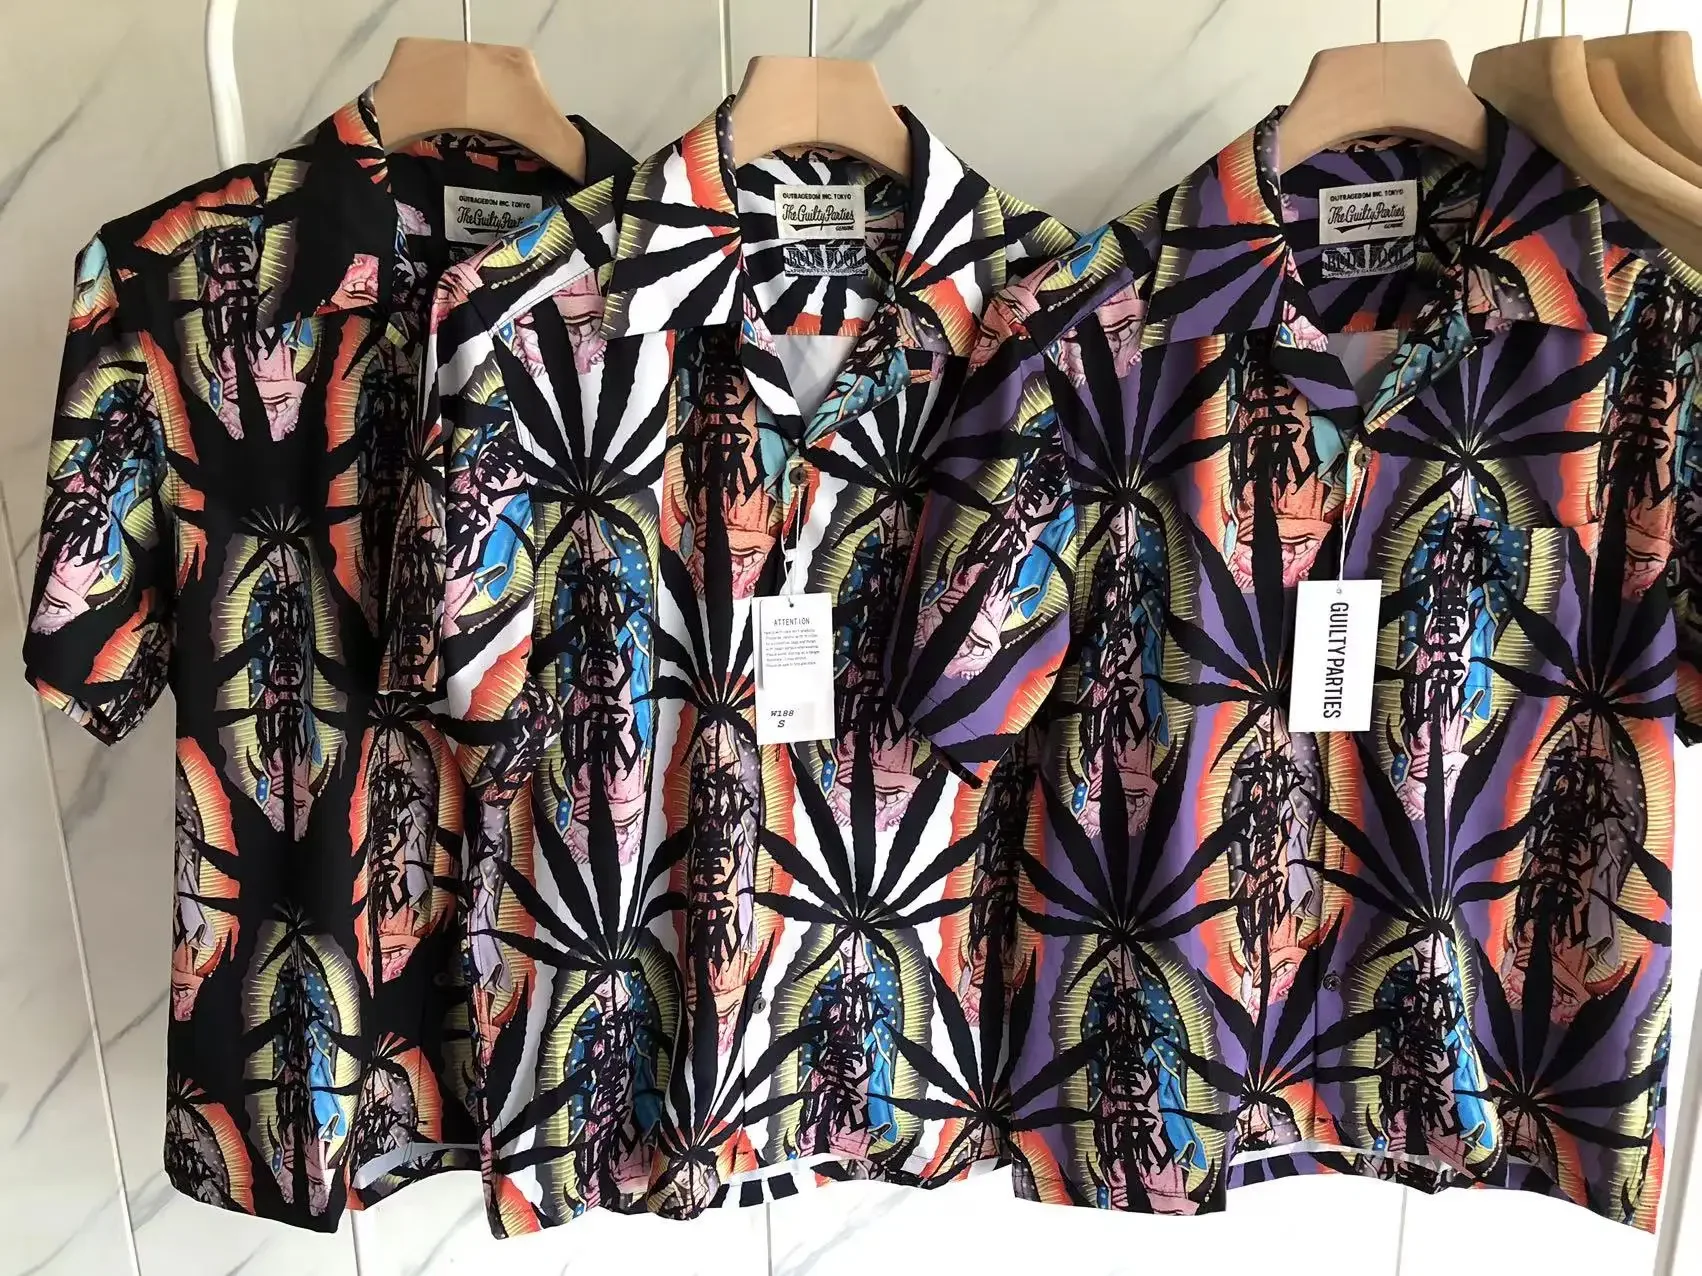 

Высокое качество 1:1 Мода Рубашка с принтом в виде кленового листа, черная, белая, фиолетовая рубашка Wacko, Мария, топ, Гавайский пляж, внутренняя бирка